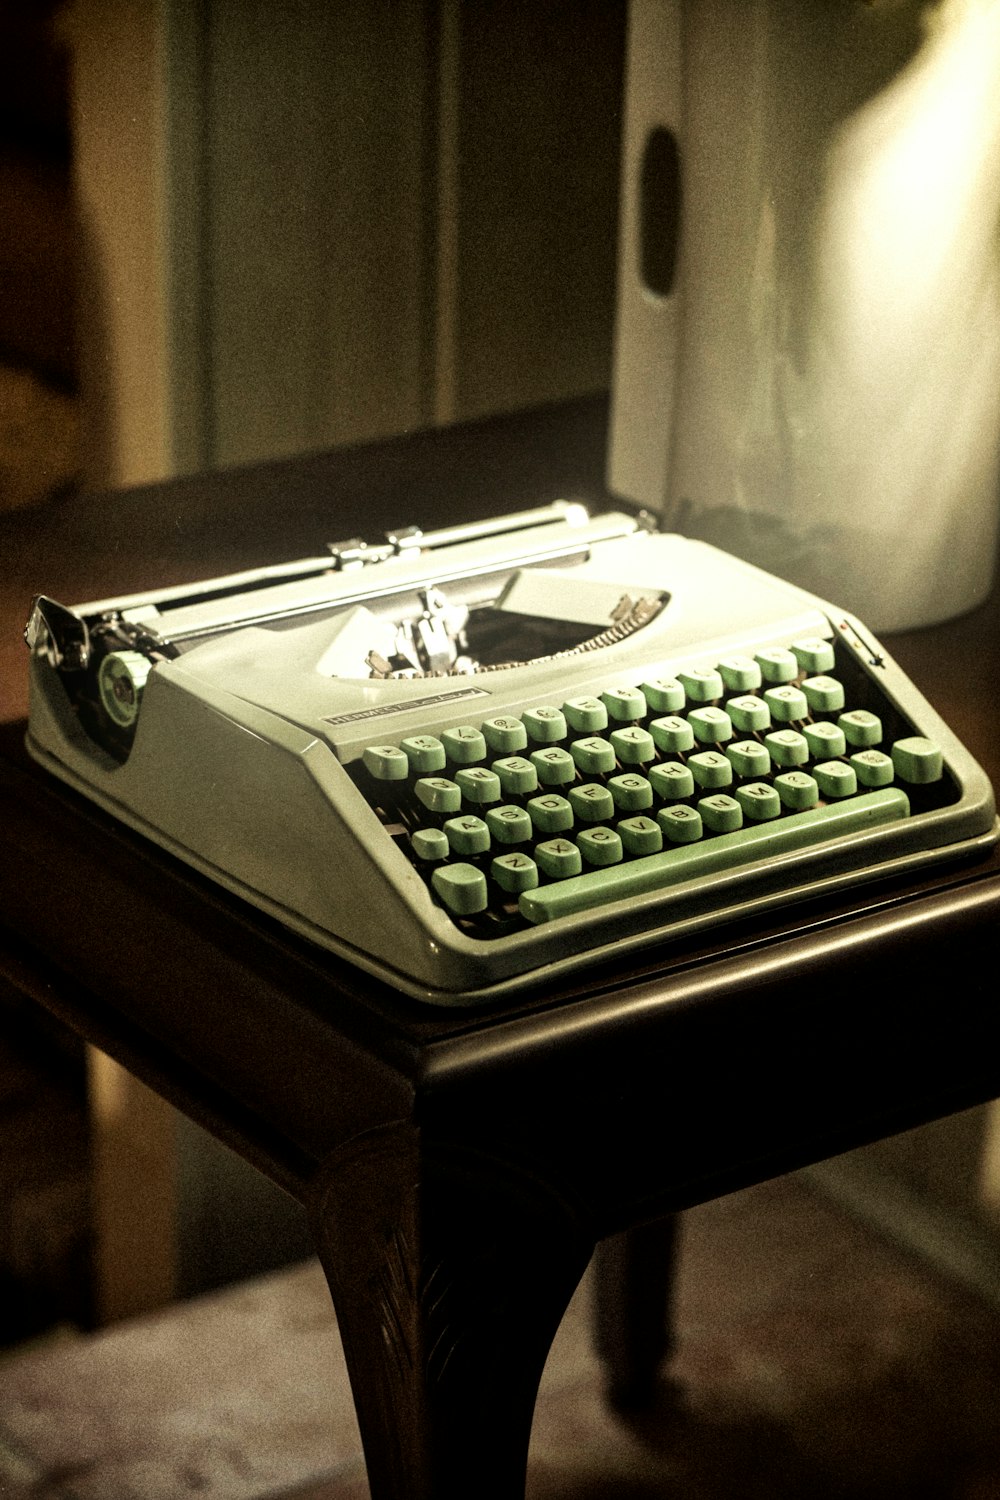 una macchina da scrivere vecchio stile seduta su un tavolo